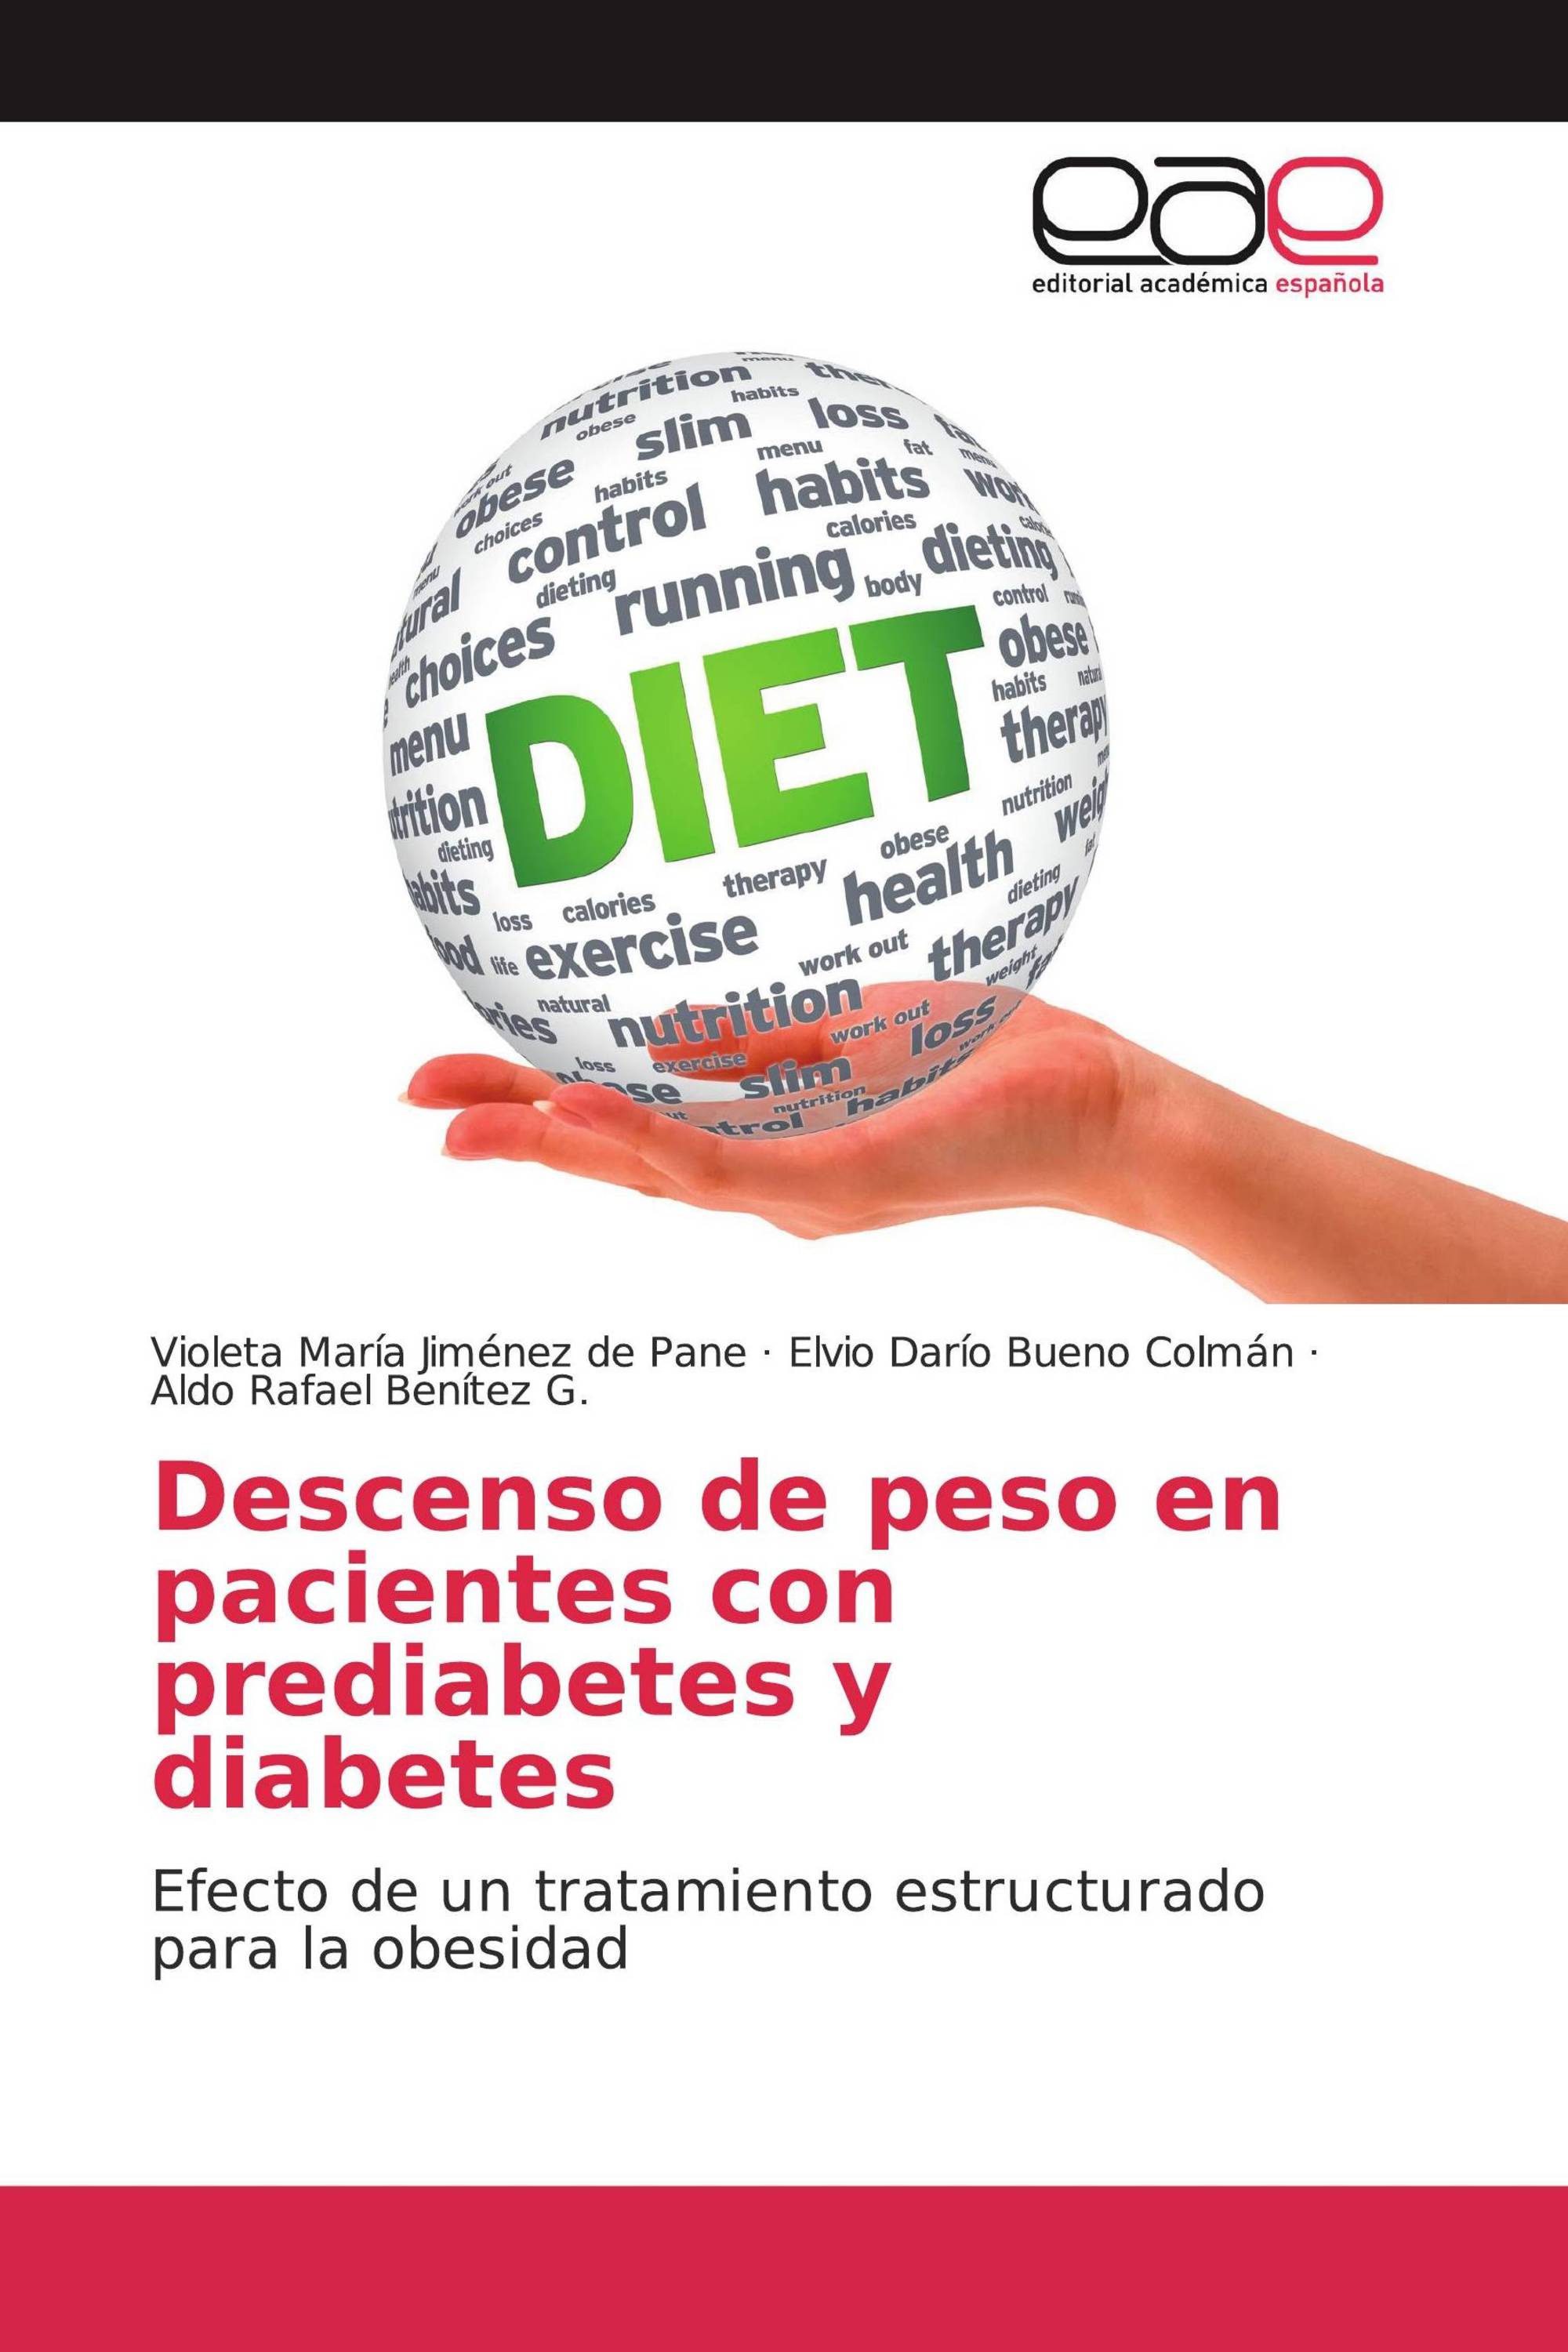 Descenso de peso en pacientes con prediabetes y diabetes